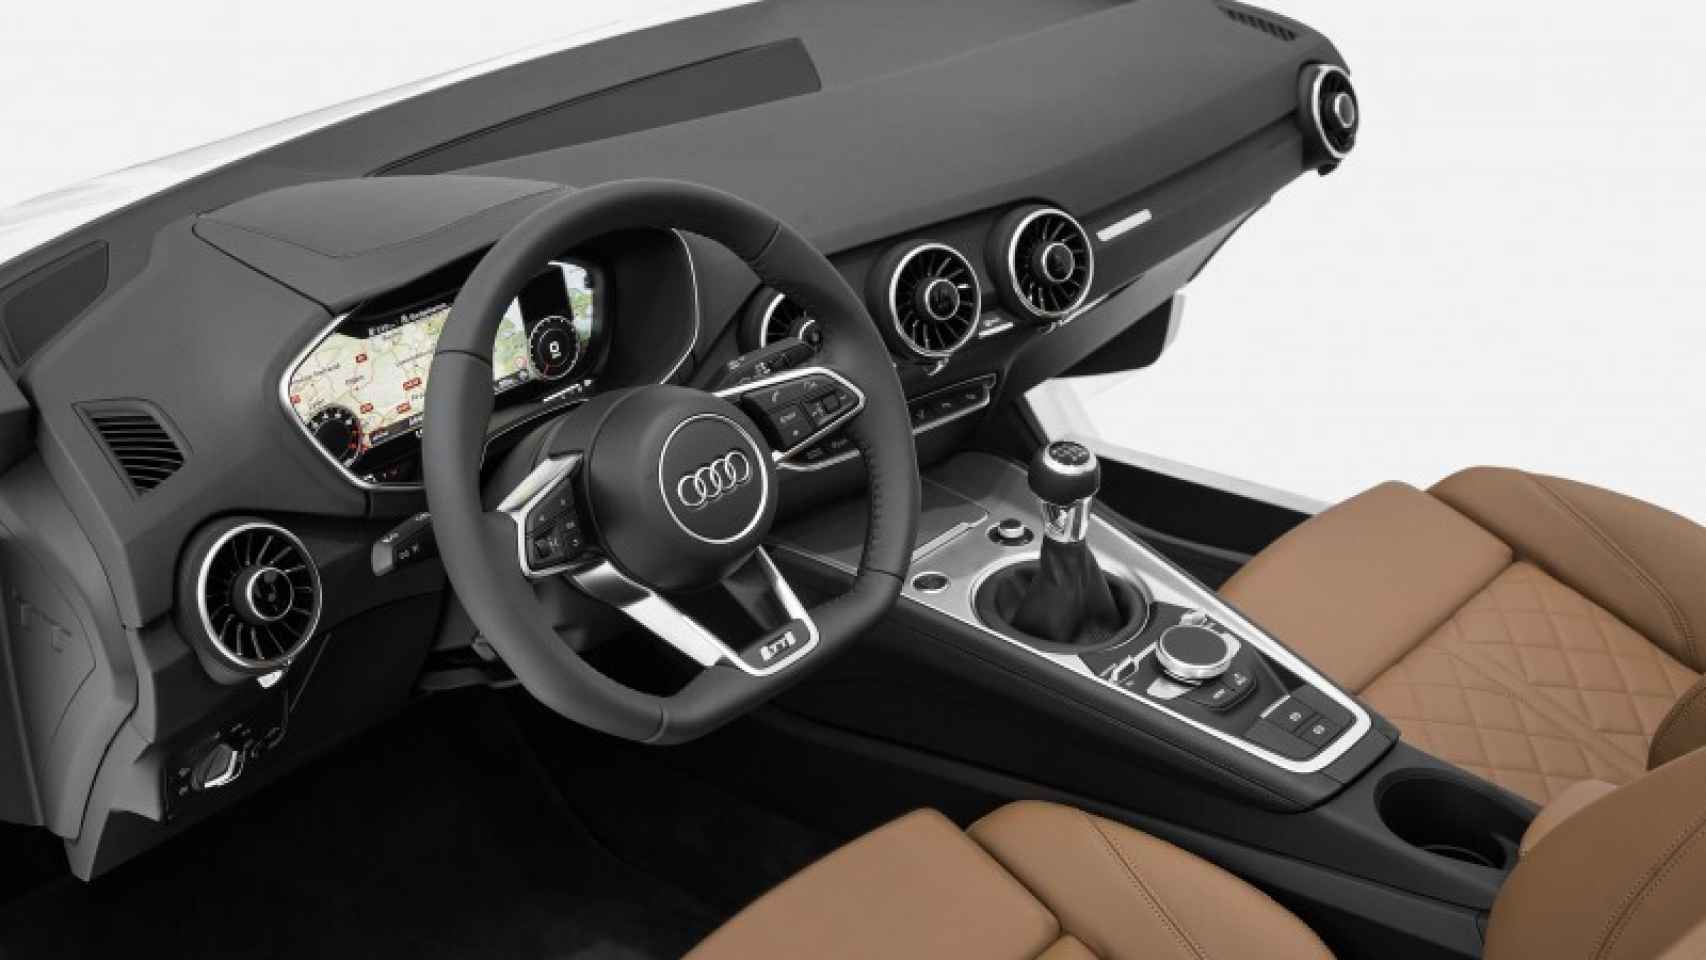 Audi presenta la tablet Audi Smart Display y un nuevo cuadro de mandos para el Audi TT